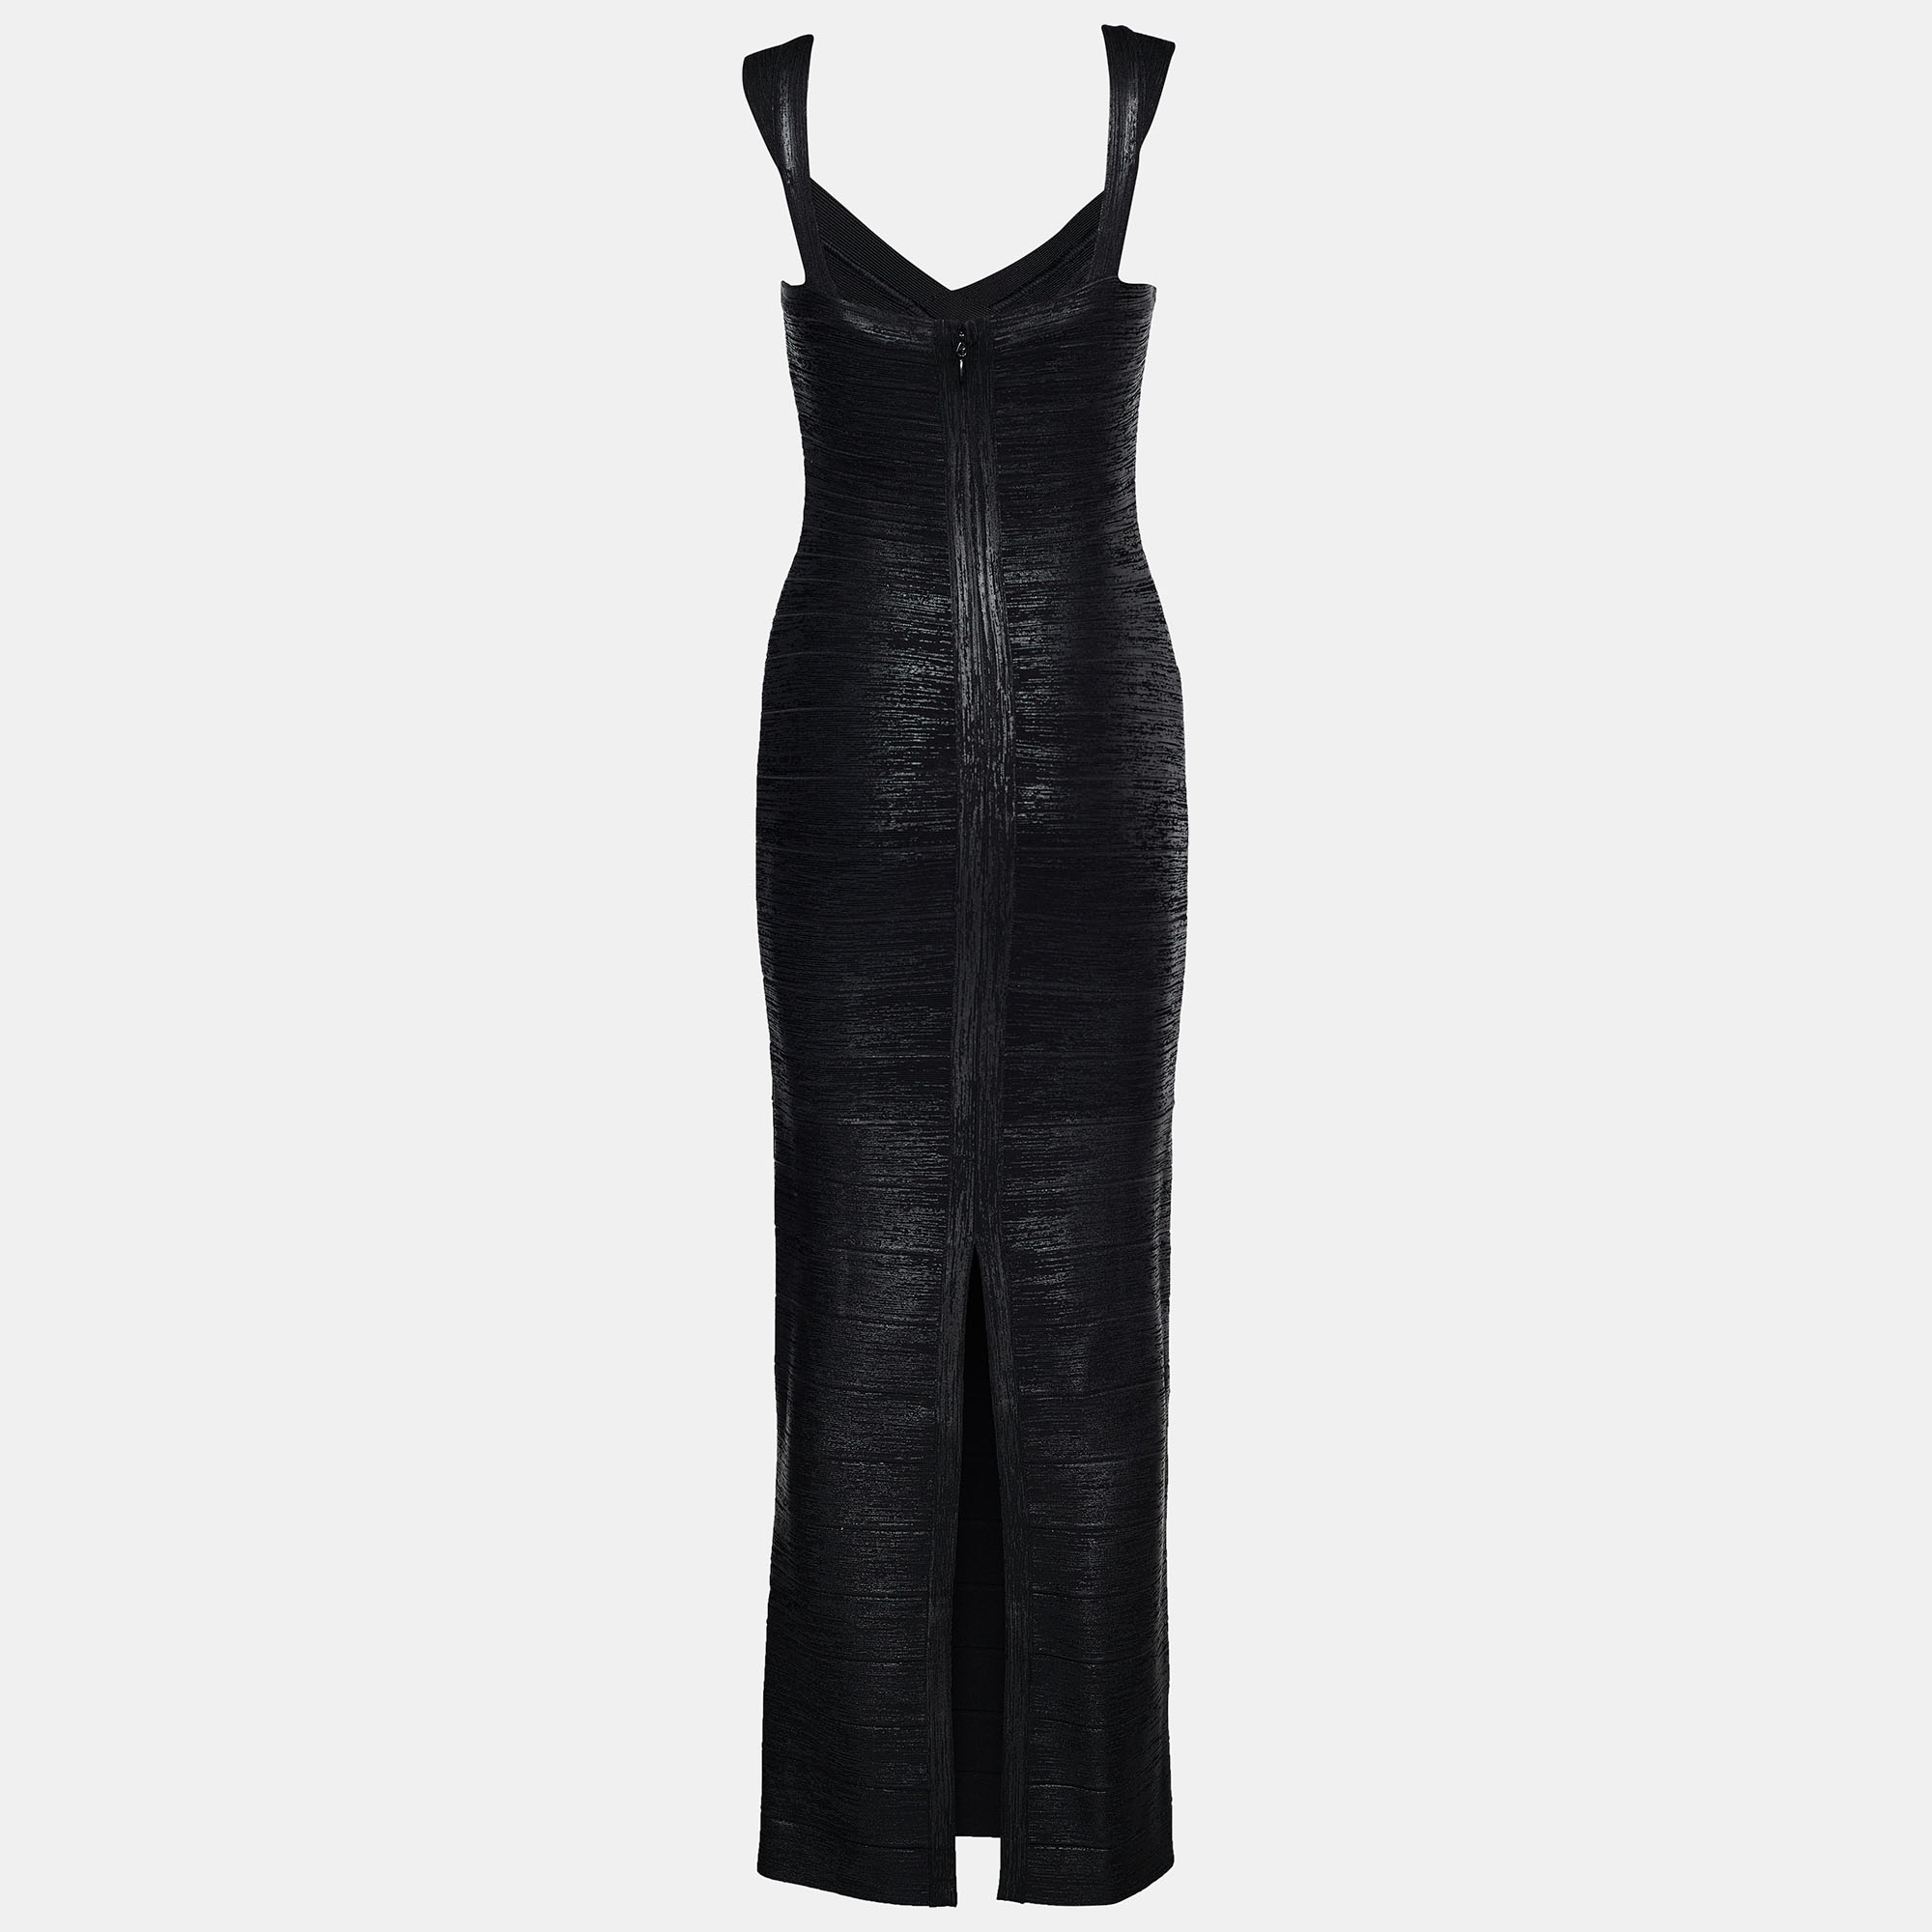 

Herve Leger Black Foil Print Knit Bandage Dress